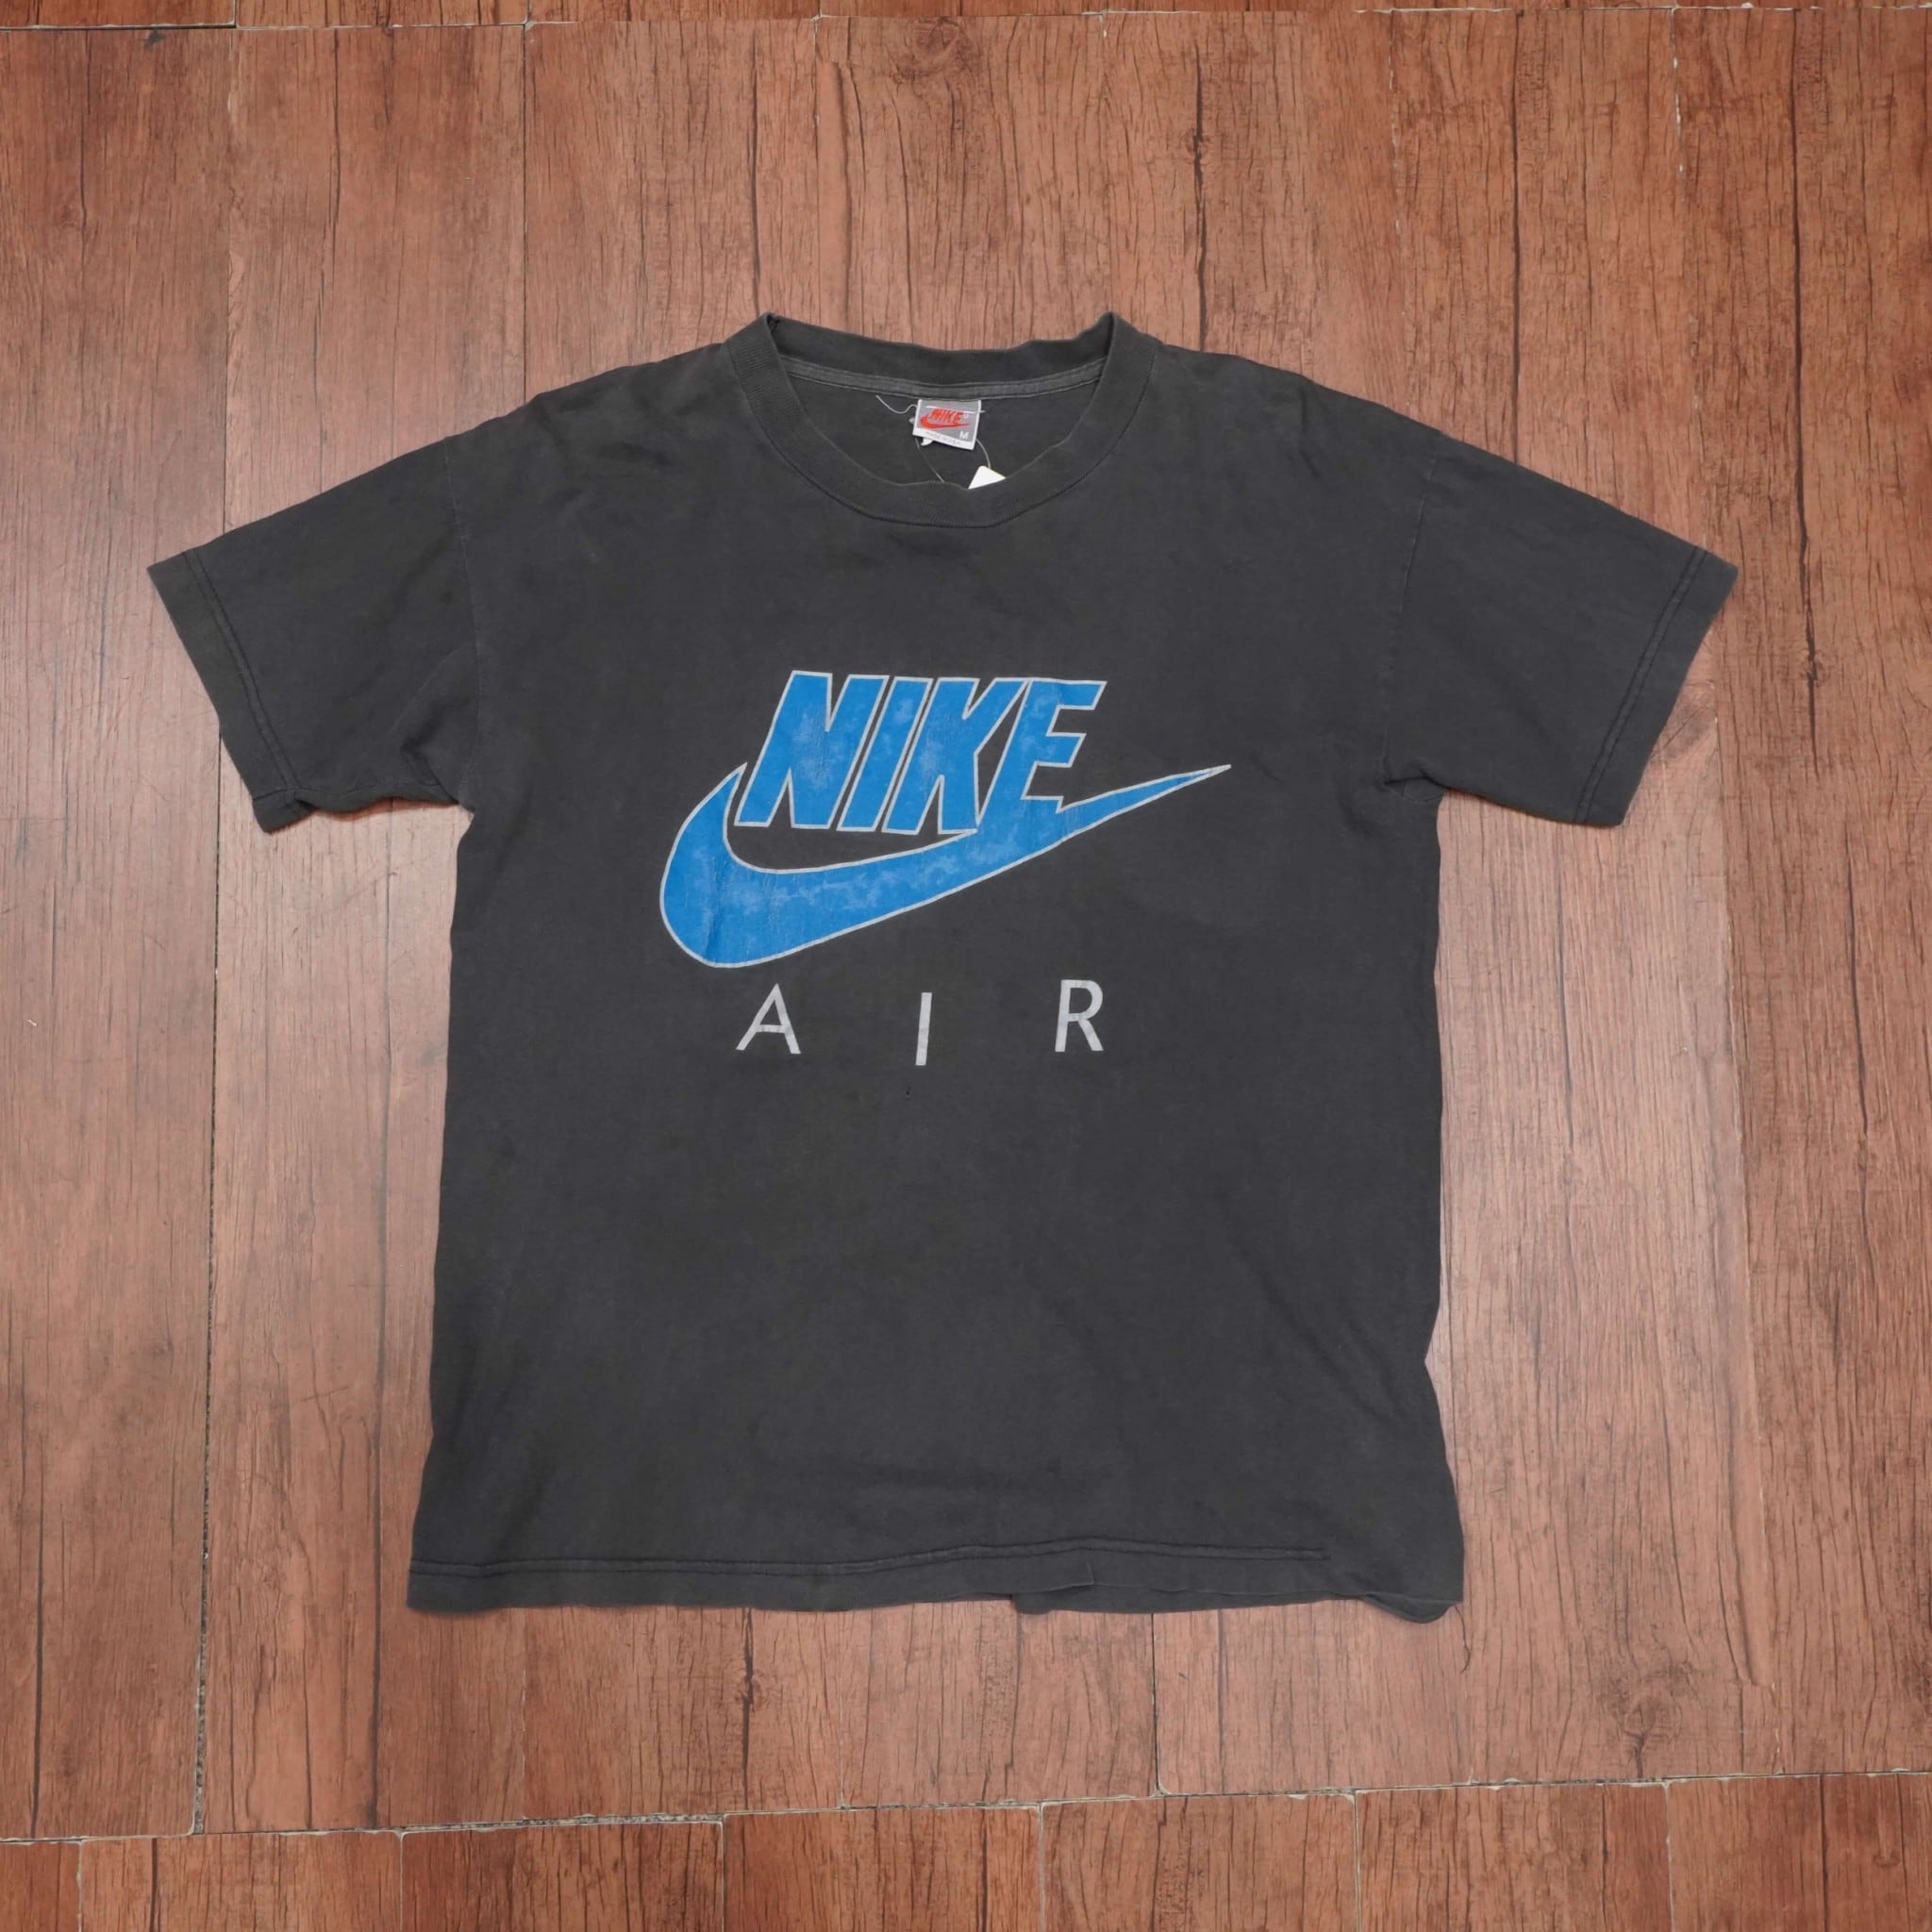 Vintage Nike tshirt